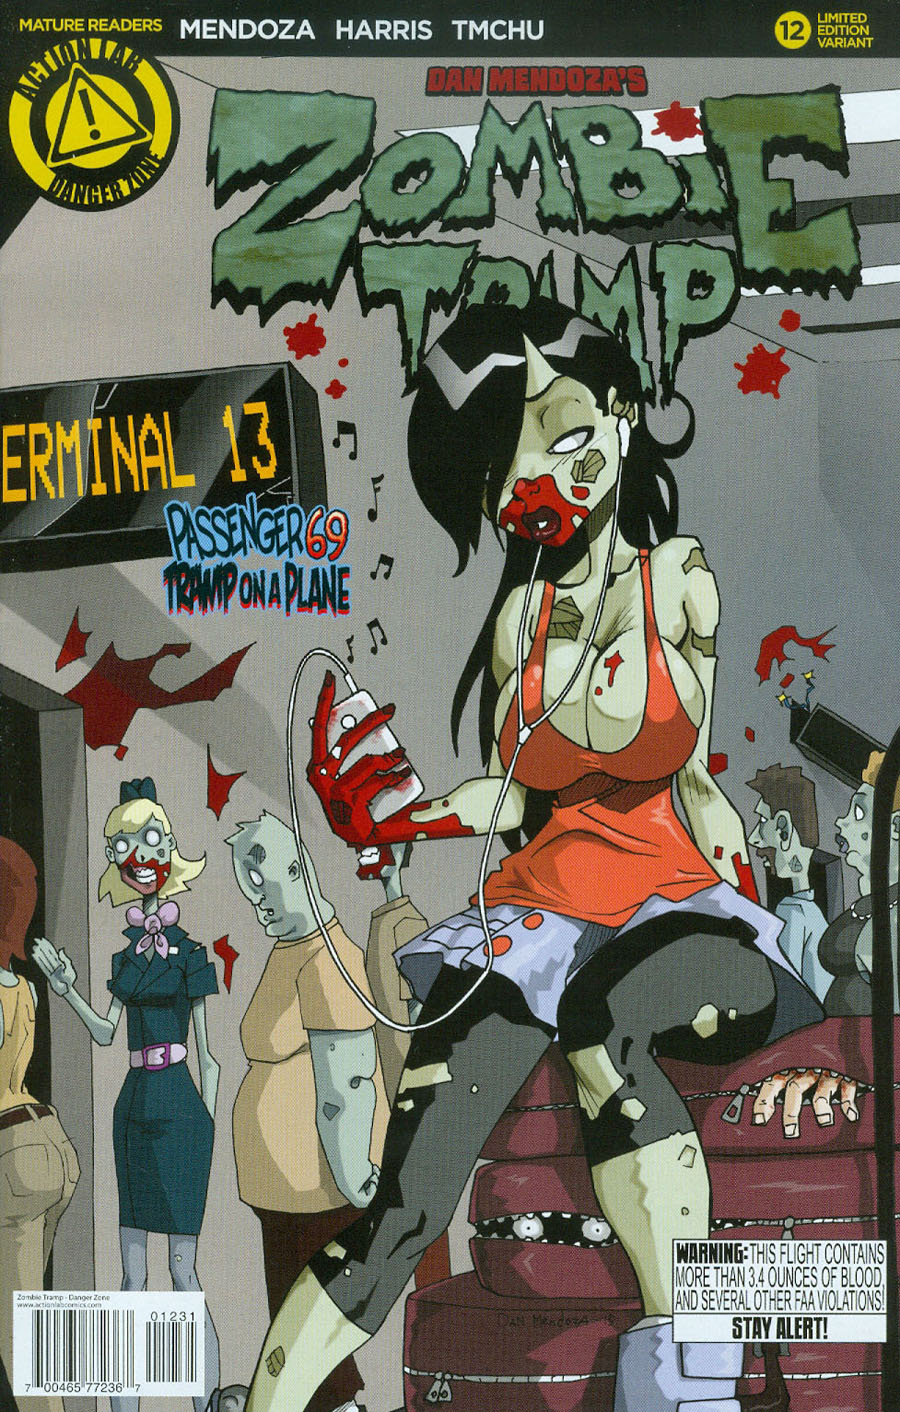 Zombie Tramp Vol 2 #12 Cover B Variant Dan Mendoza Cover - M